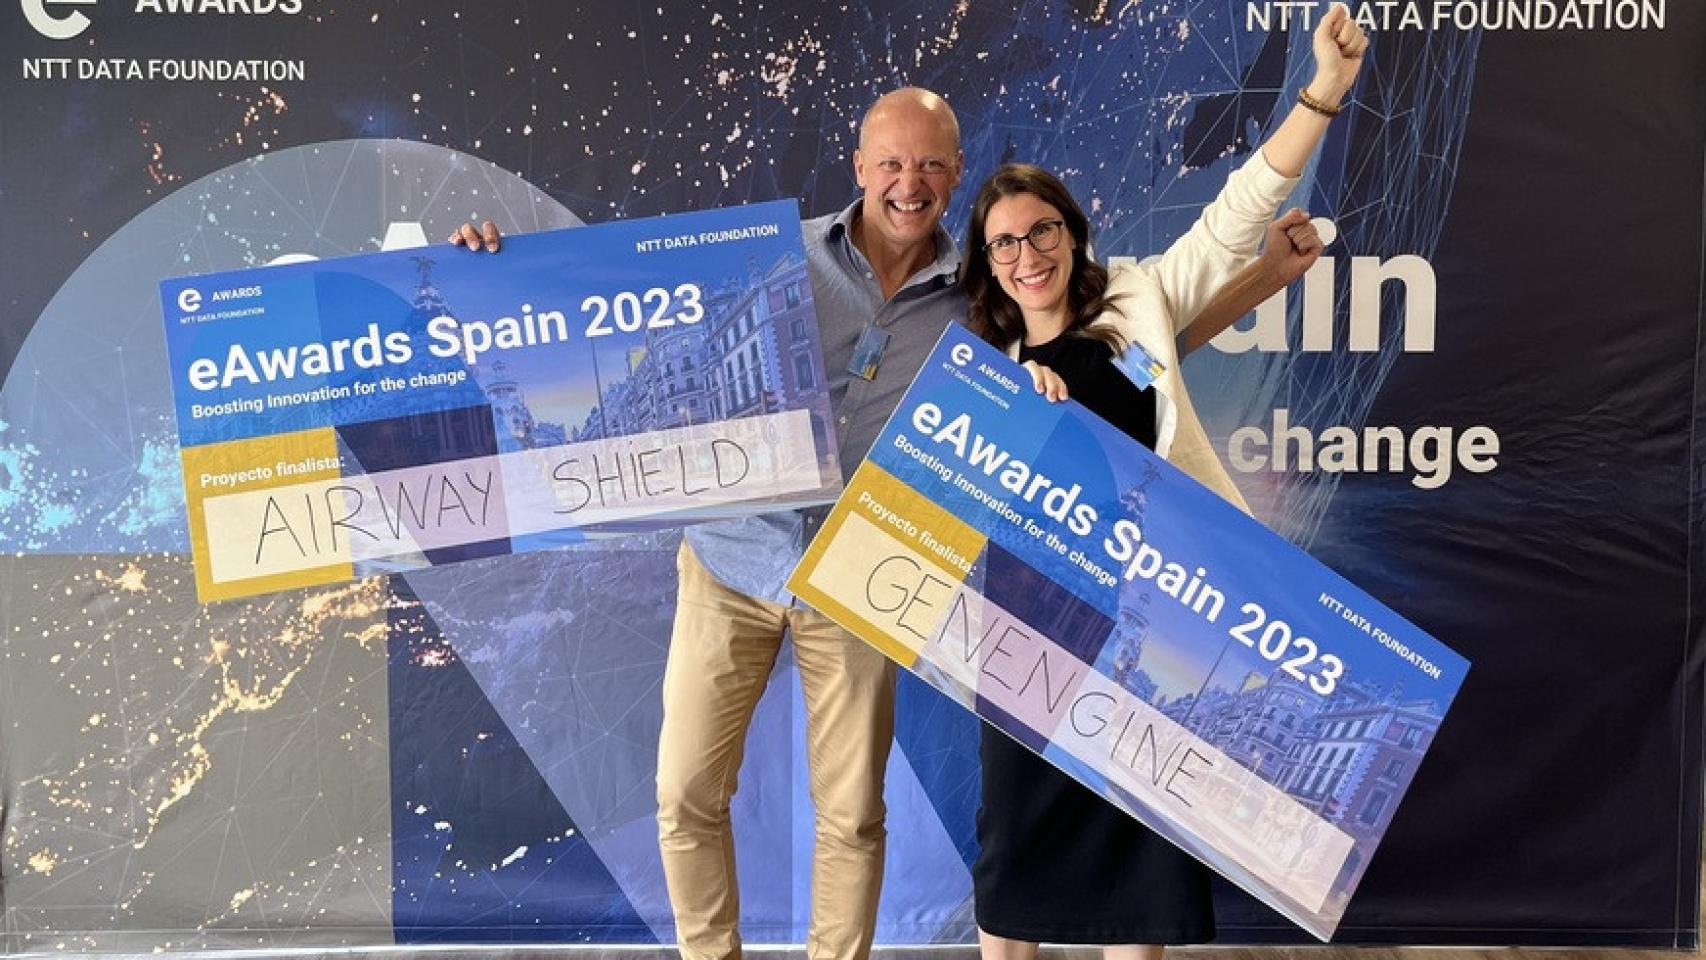 Fundadores de AirwayShield y Genengine, finalistas de los eAwards España 2023 de la Fundación NTT Data